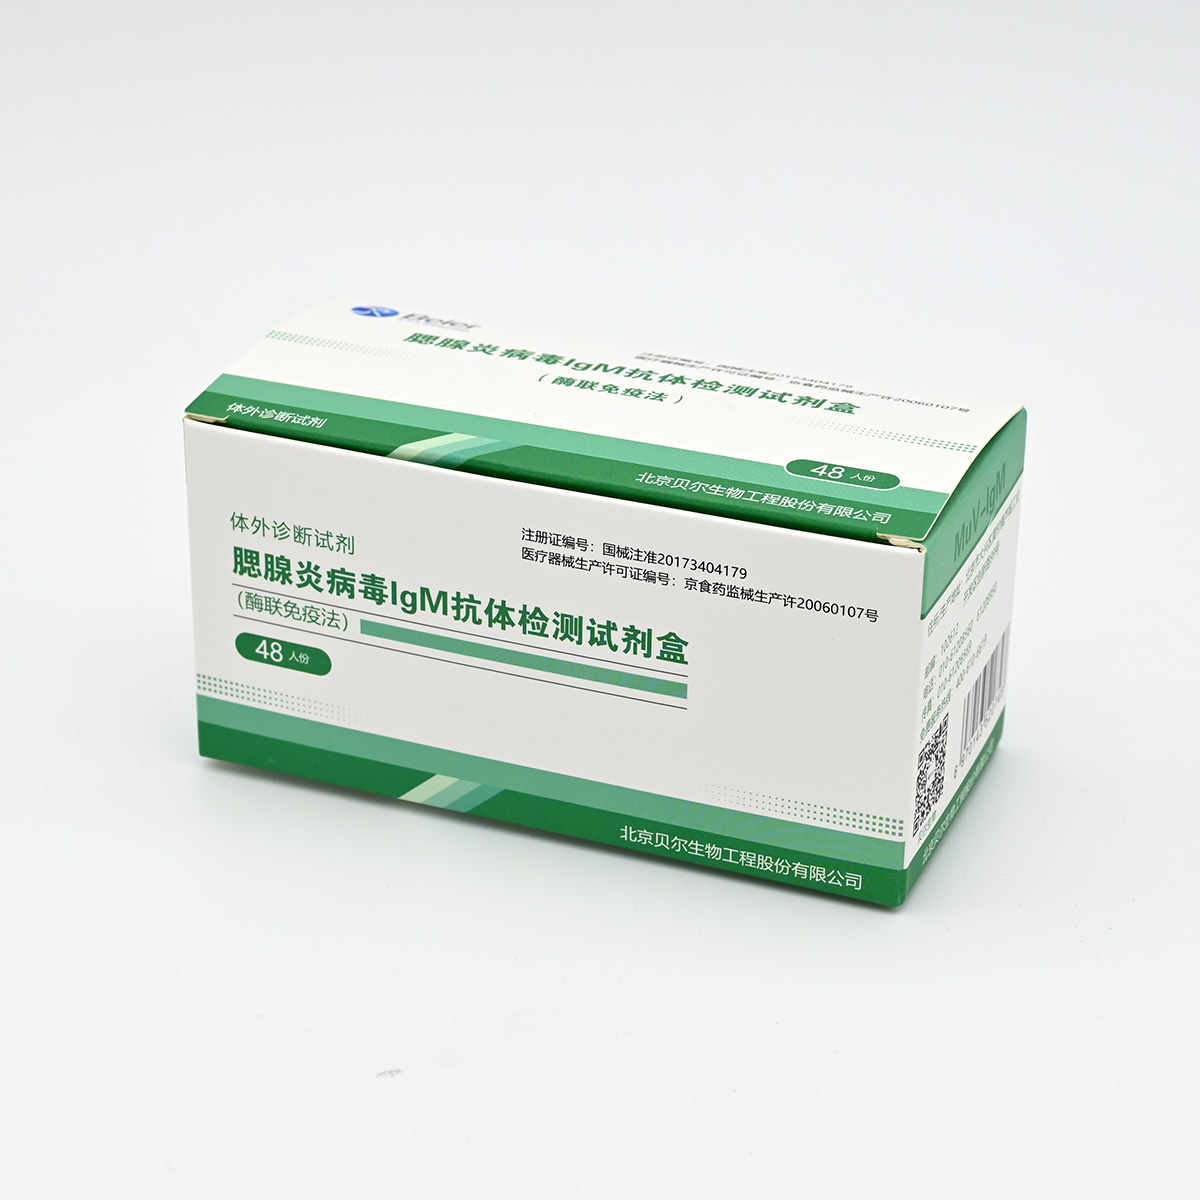 【贝尔】腮腺炎病毒IgM抗体检测试剂盒(酶联免疫法)